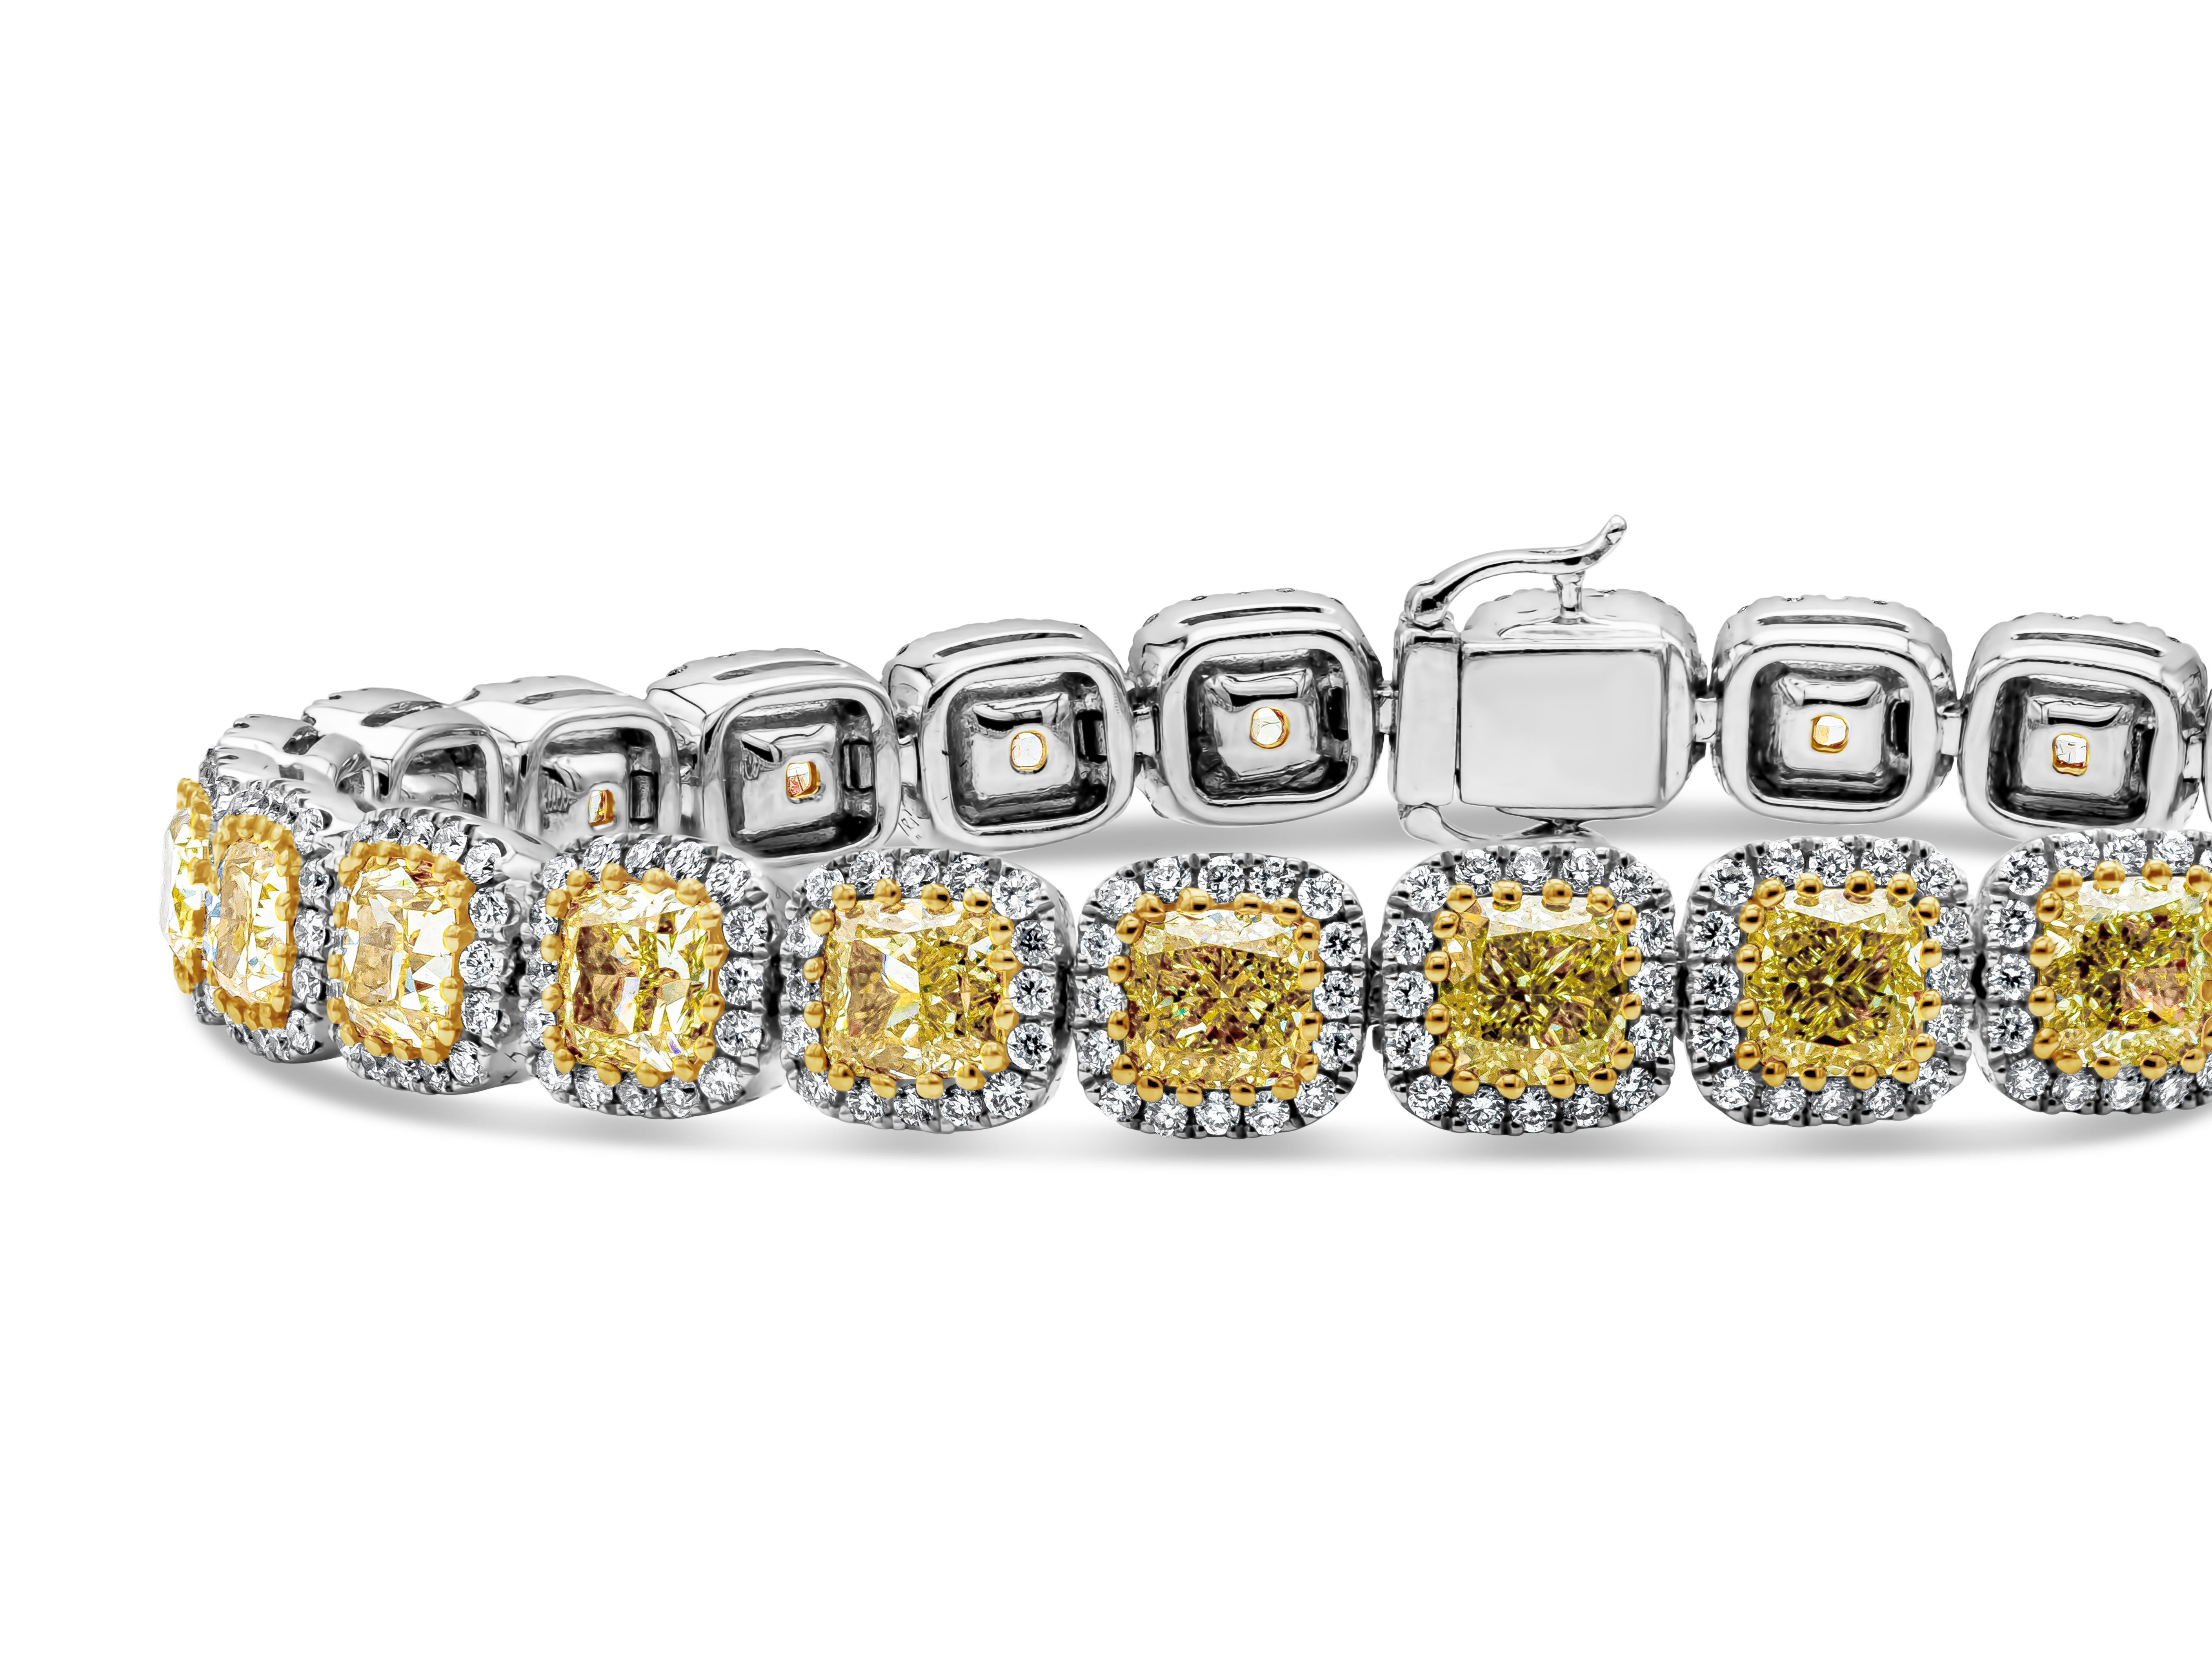 Dieses wunderschöne Armband besteht aus 27 gelben Fancy-Diamanten im Kissenschliff mit einem Gesamtgewicht von 12,92 Karat. Jeder Stein ist von einer einzigen Reihe runder Brillanten mit einem Gesamtgewicht von 2,04 Karat umgeben.  Hergestellt aus